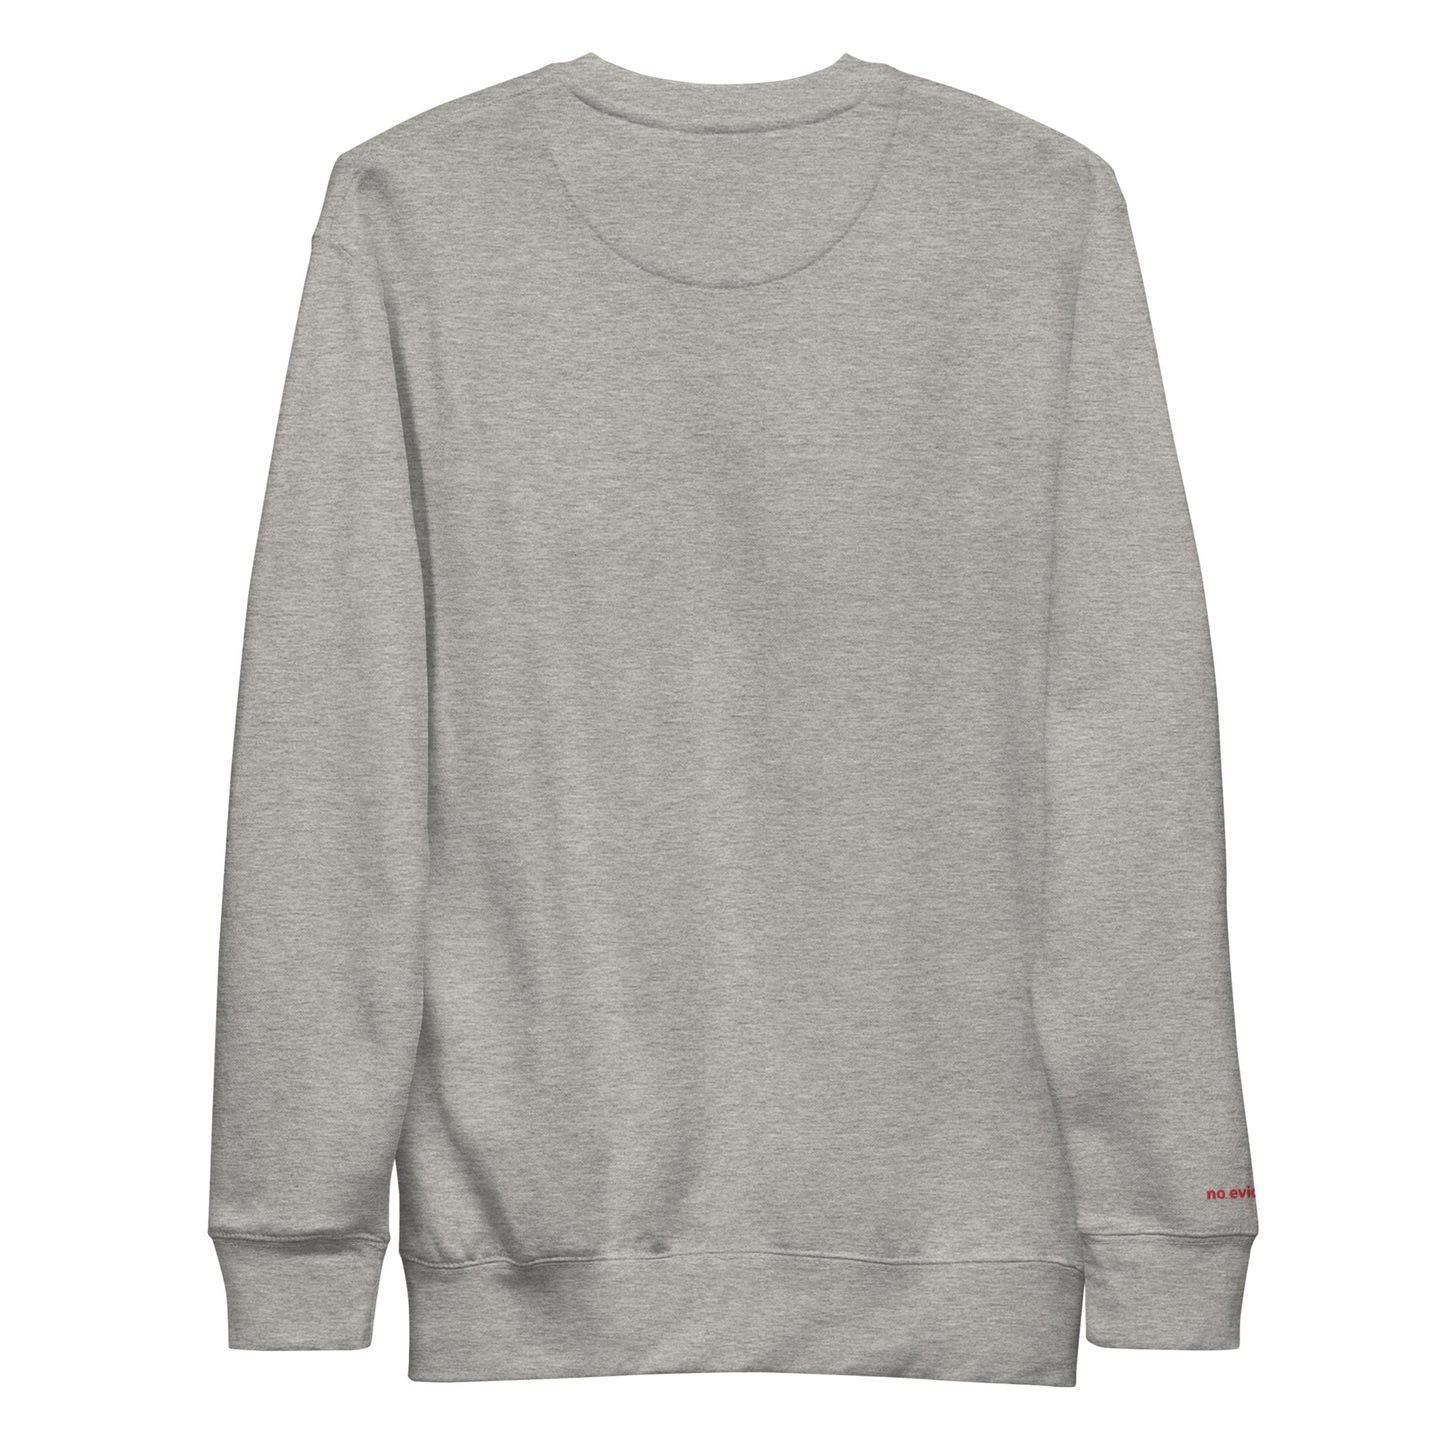 Embroidered Unisex Premium Sweatshirt "NE Classic"